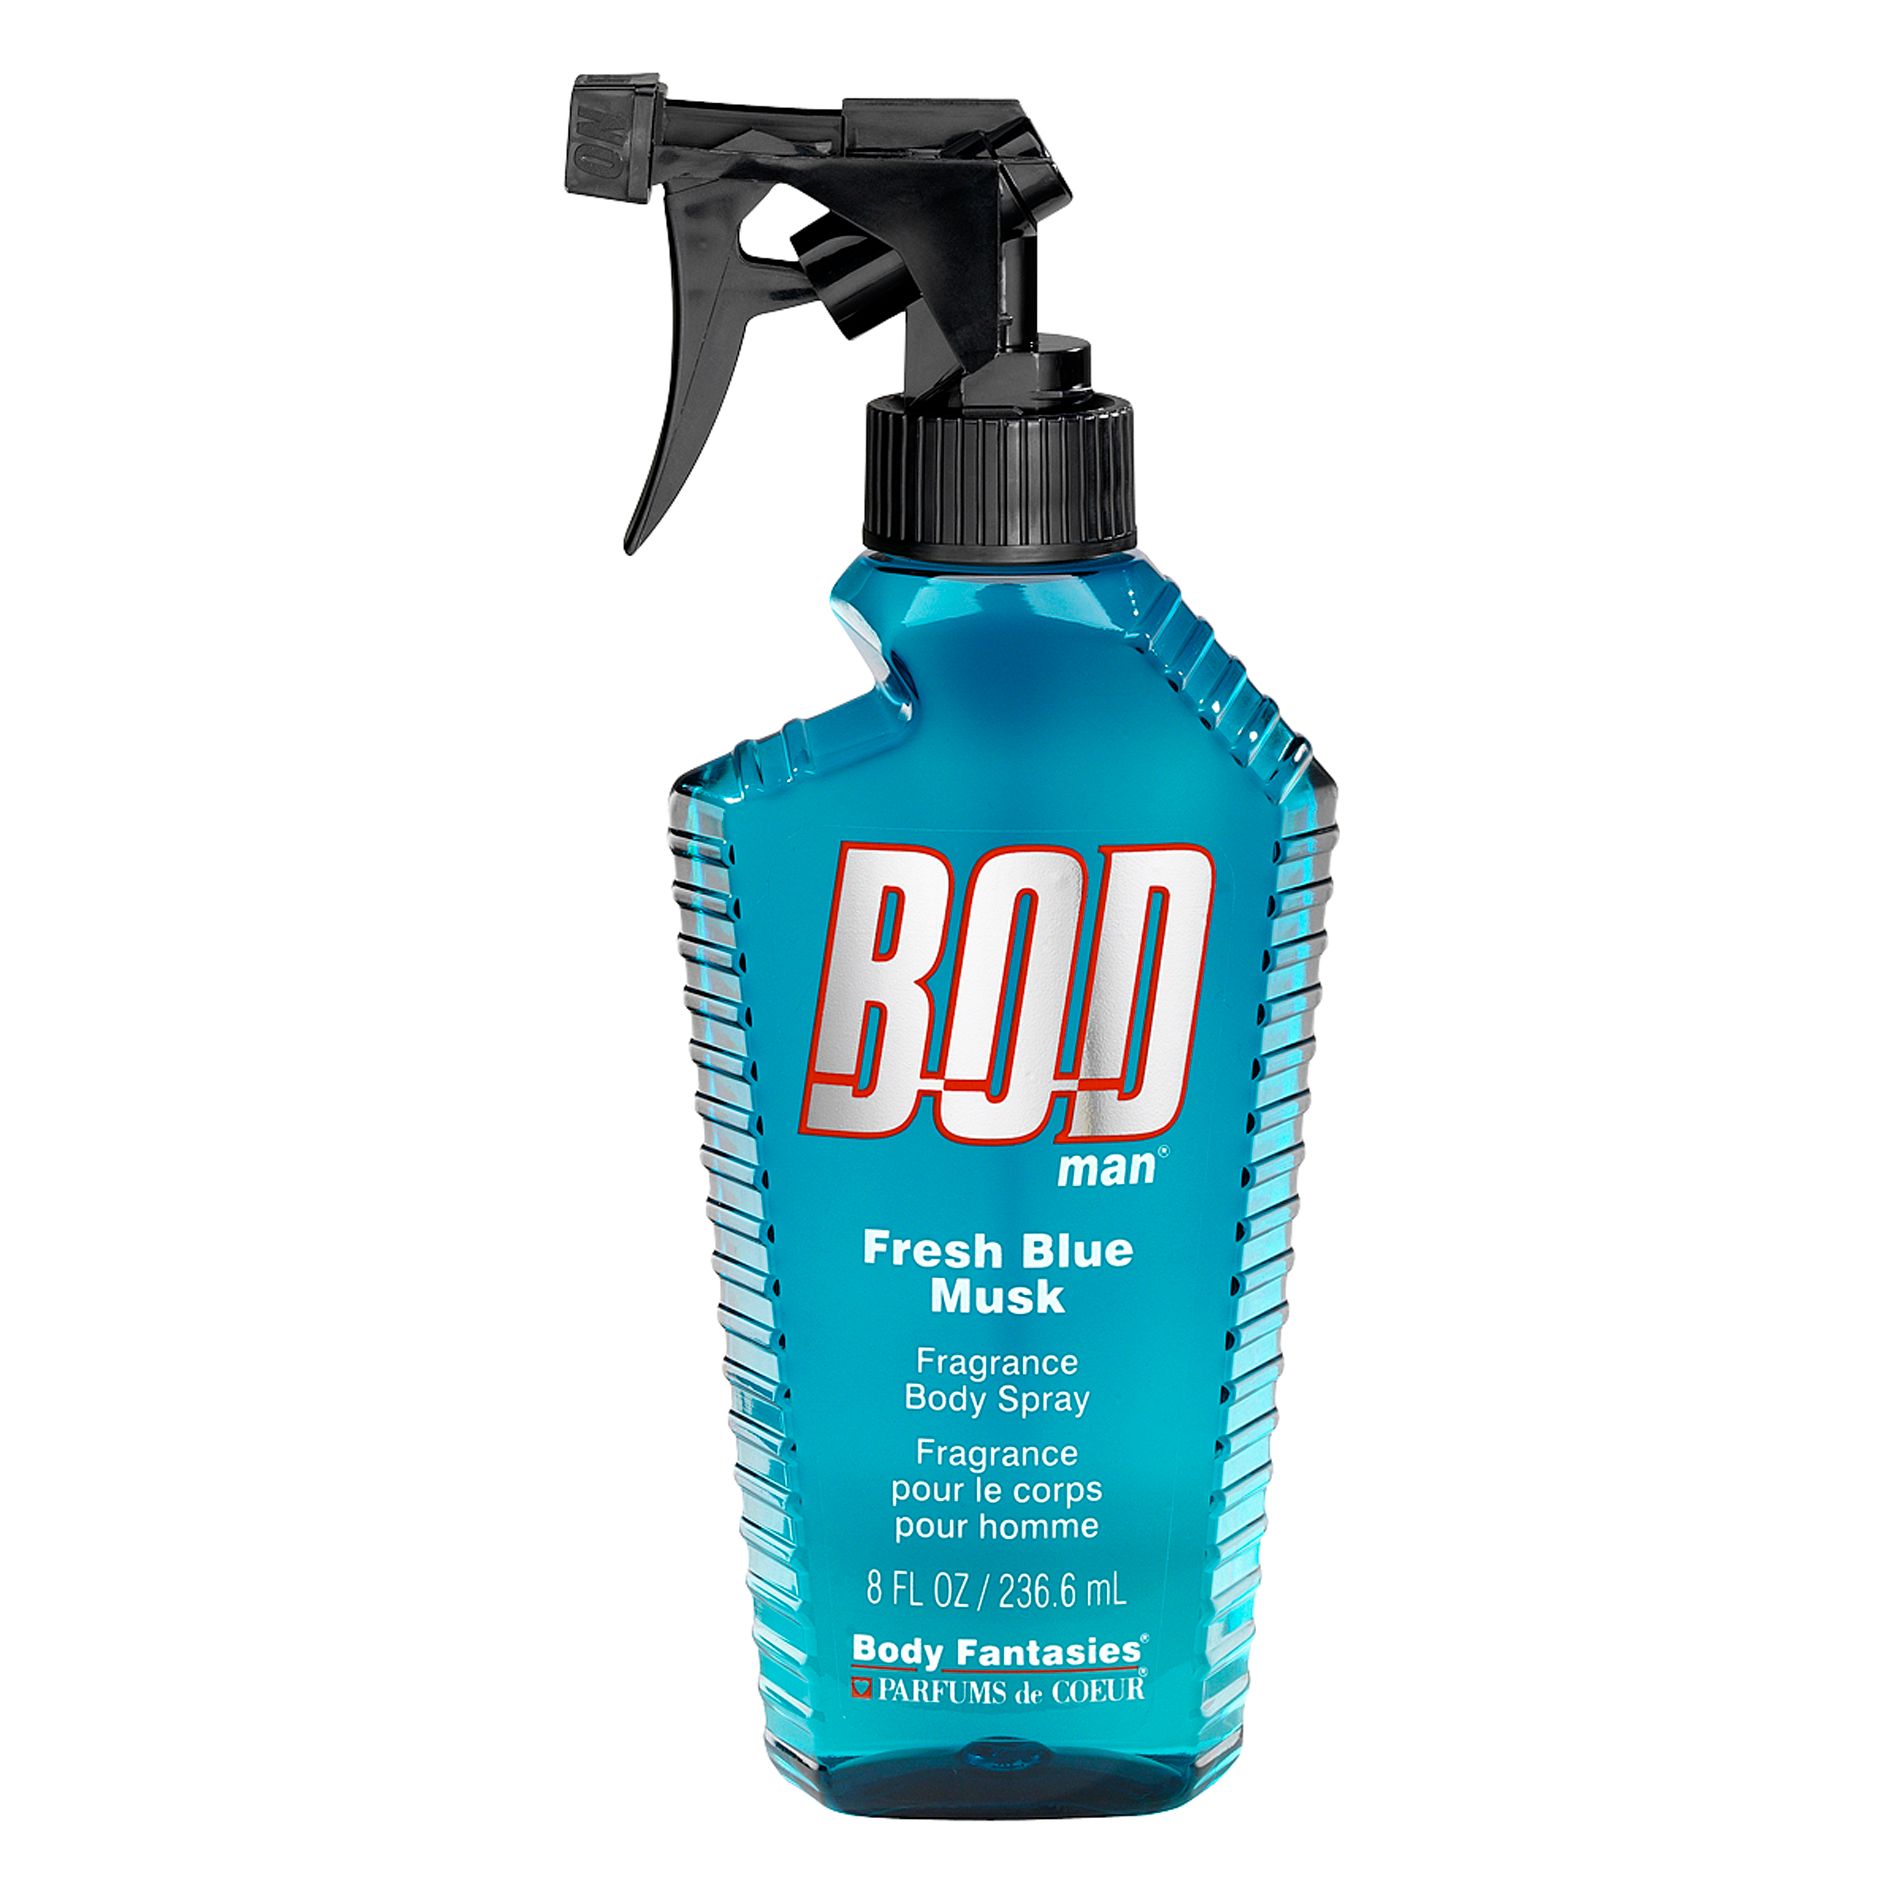 BOD Man 8 oz. Body Spray Fresh Blue Musk